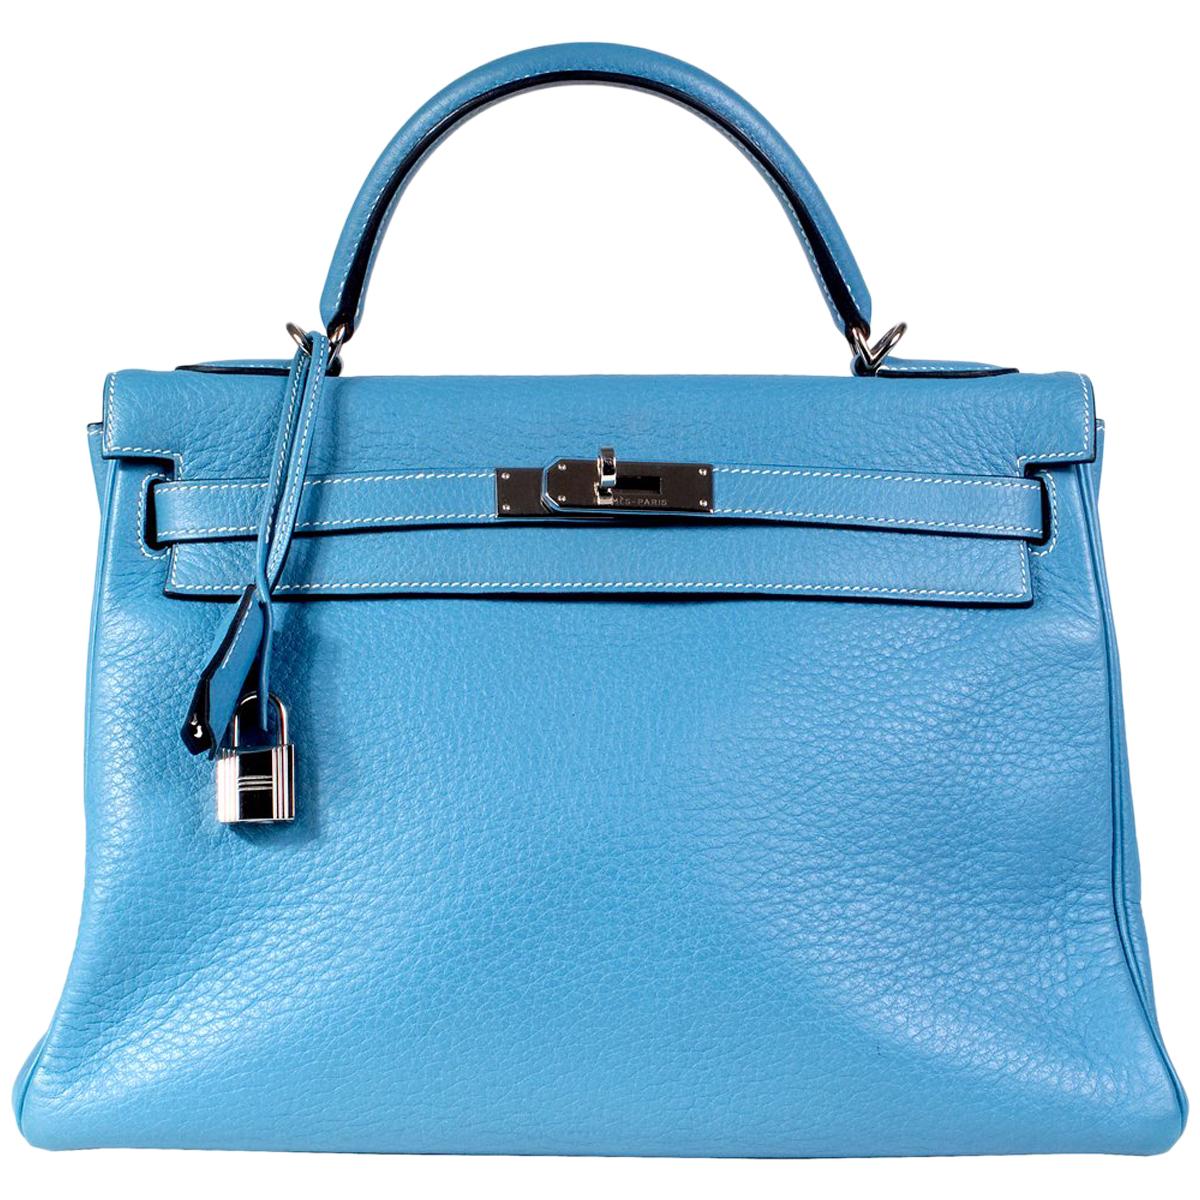 Hermes Blue Jean Togo Leather 32cm Kelly Handbag, 2002